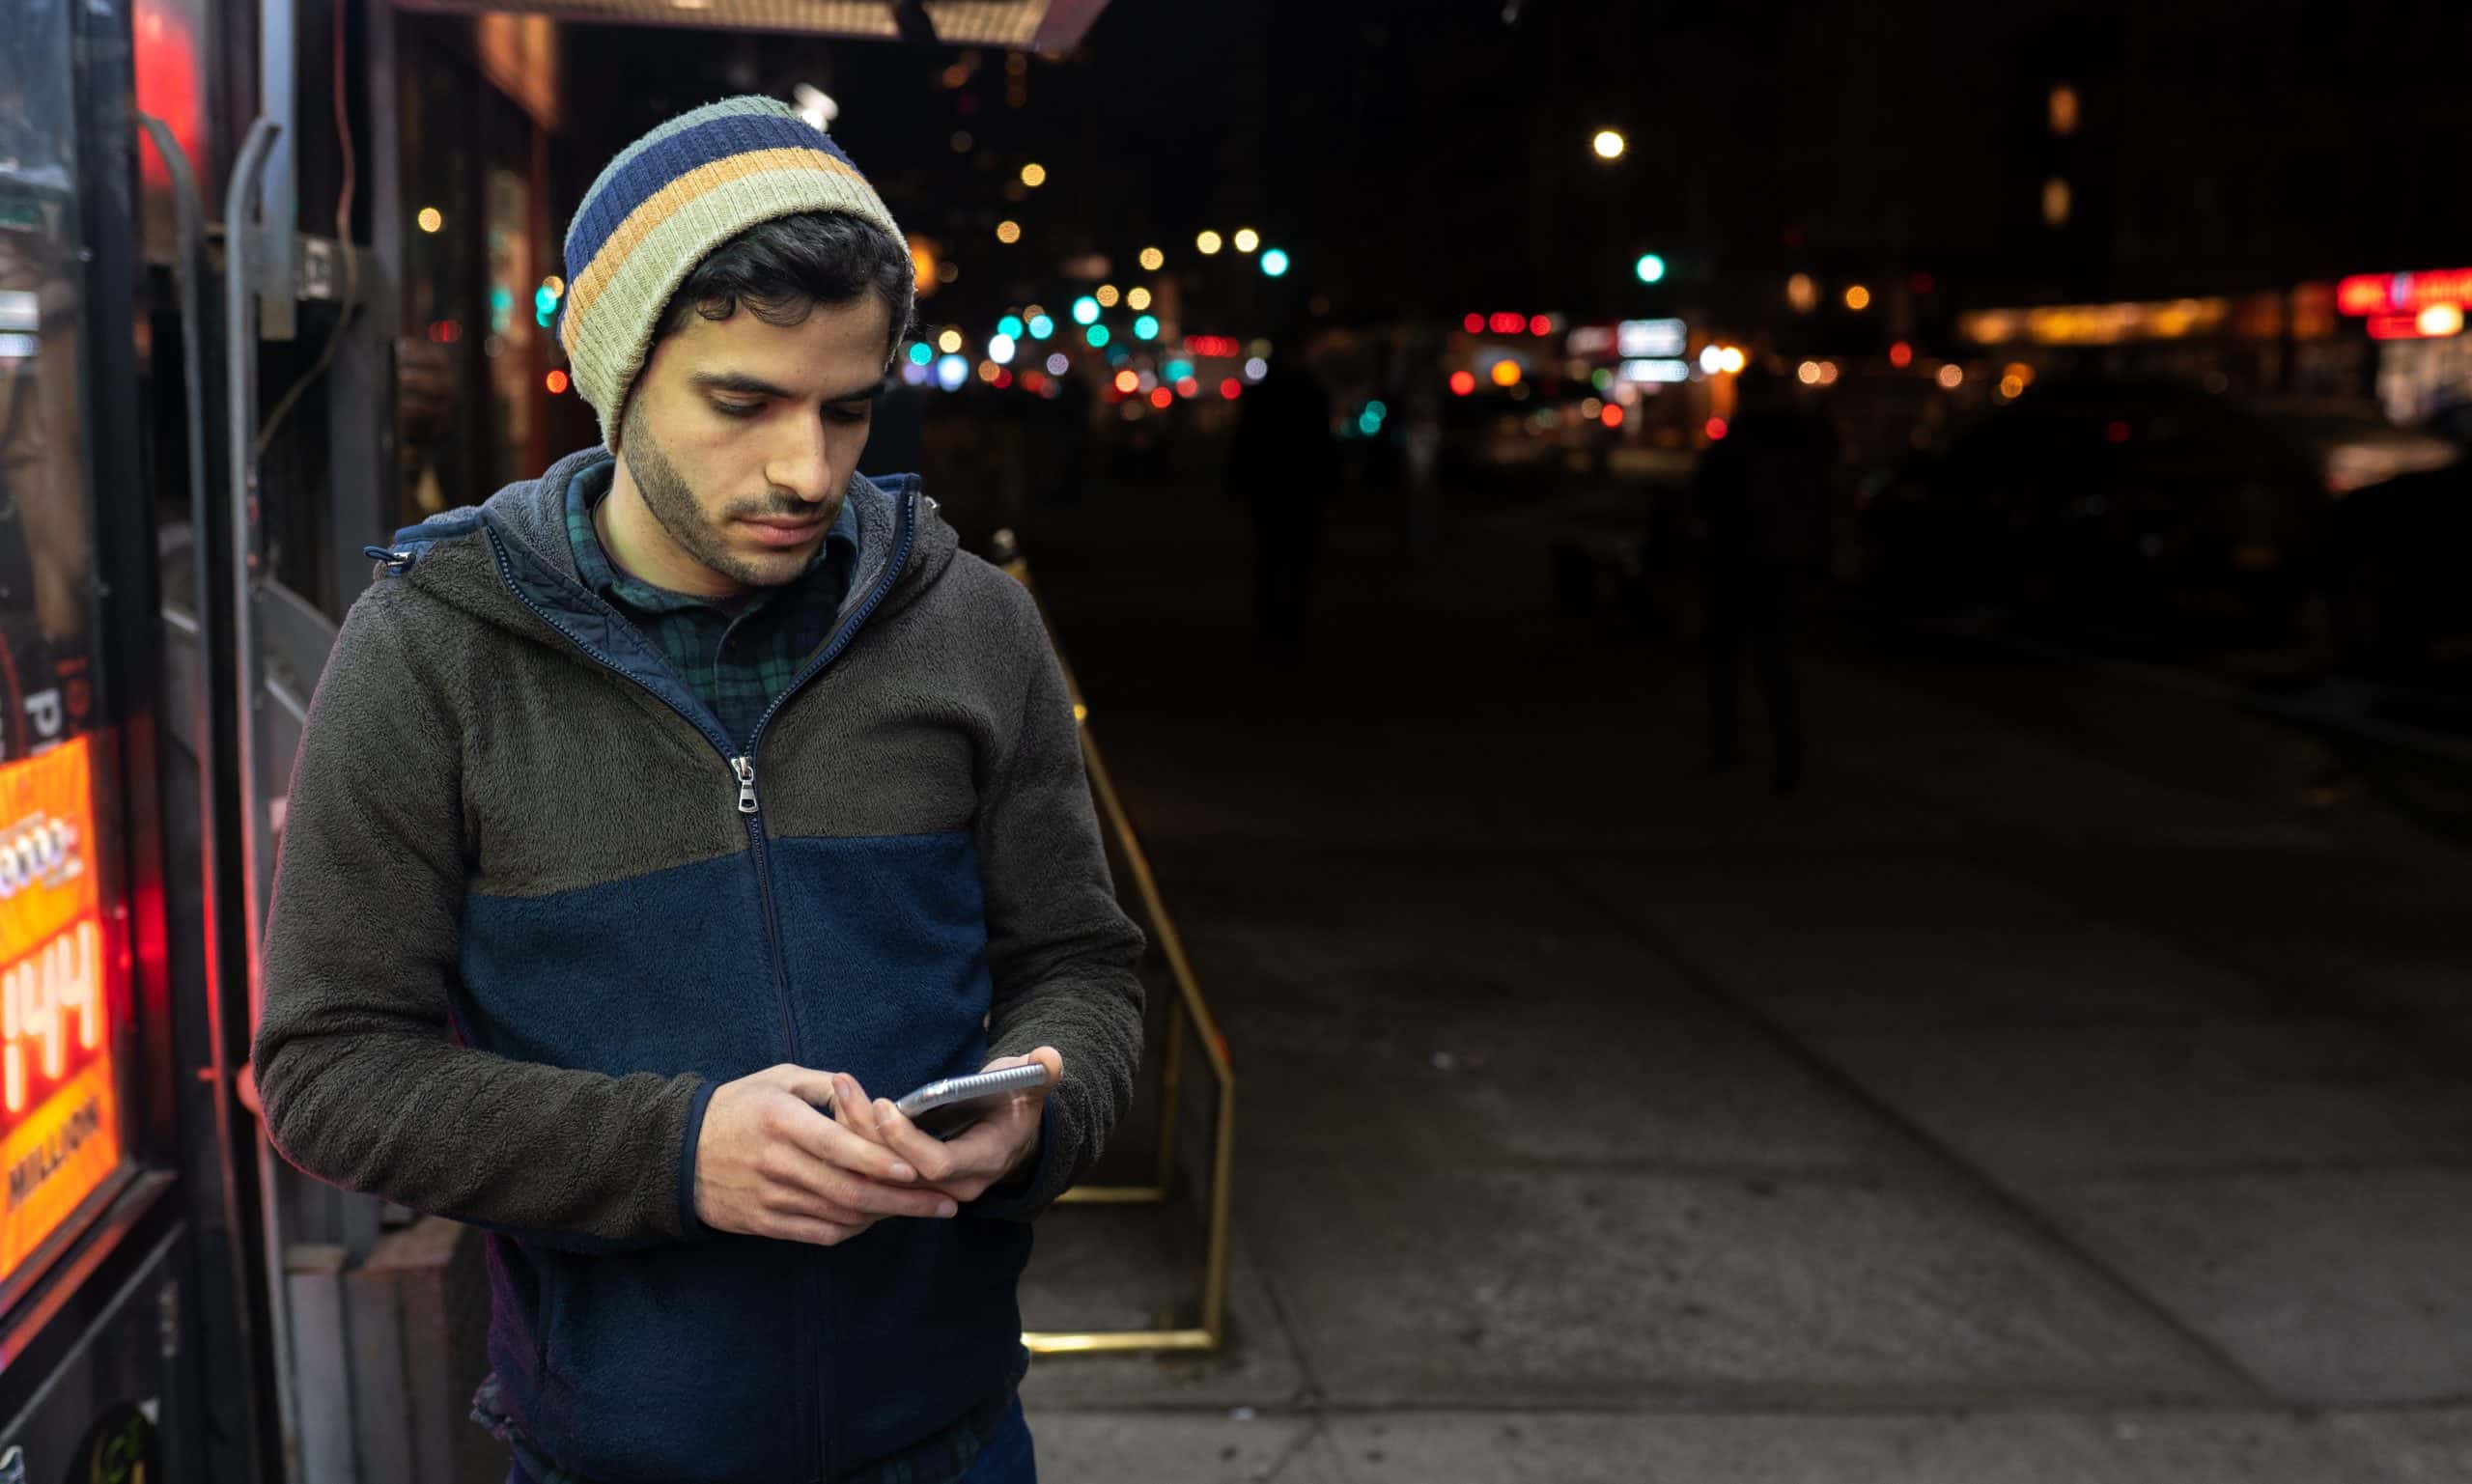 Man looking at his phone at night.